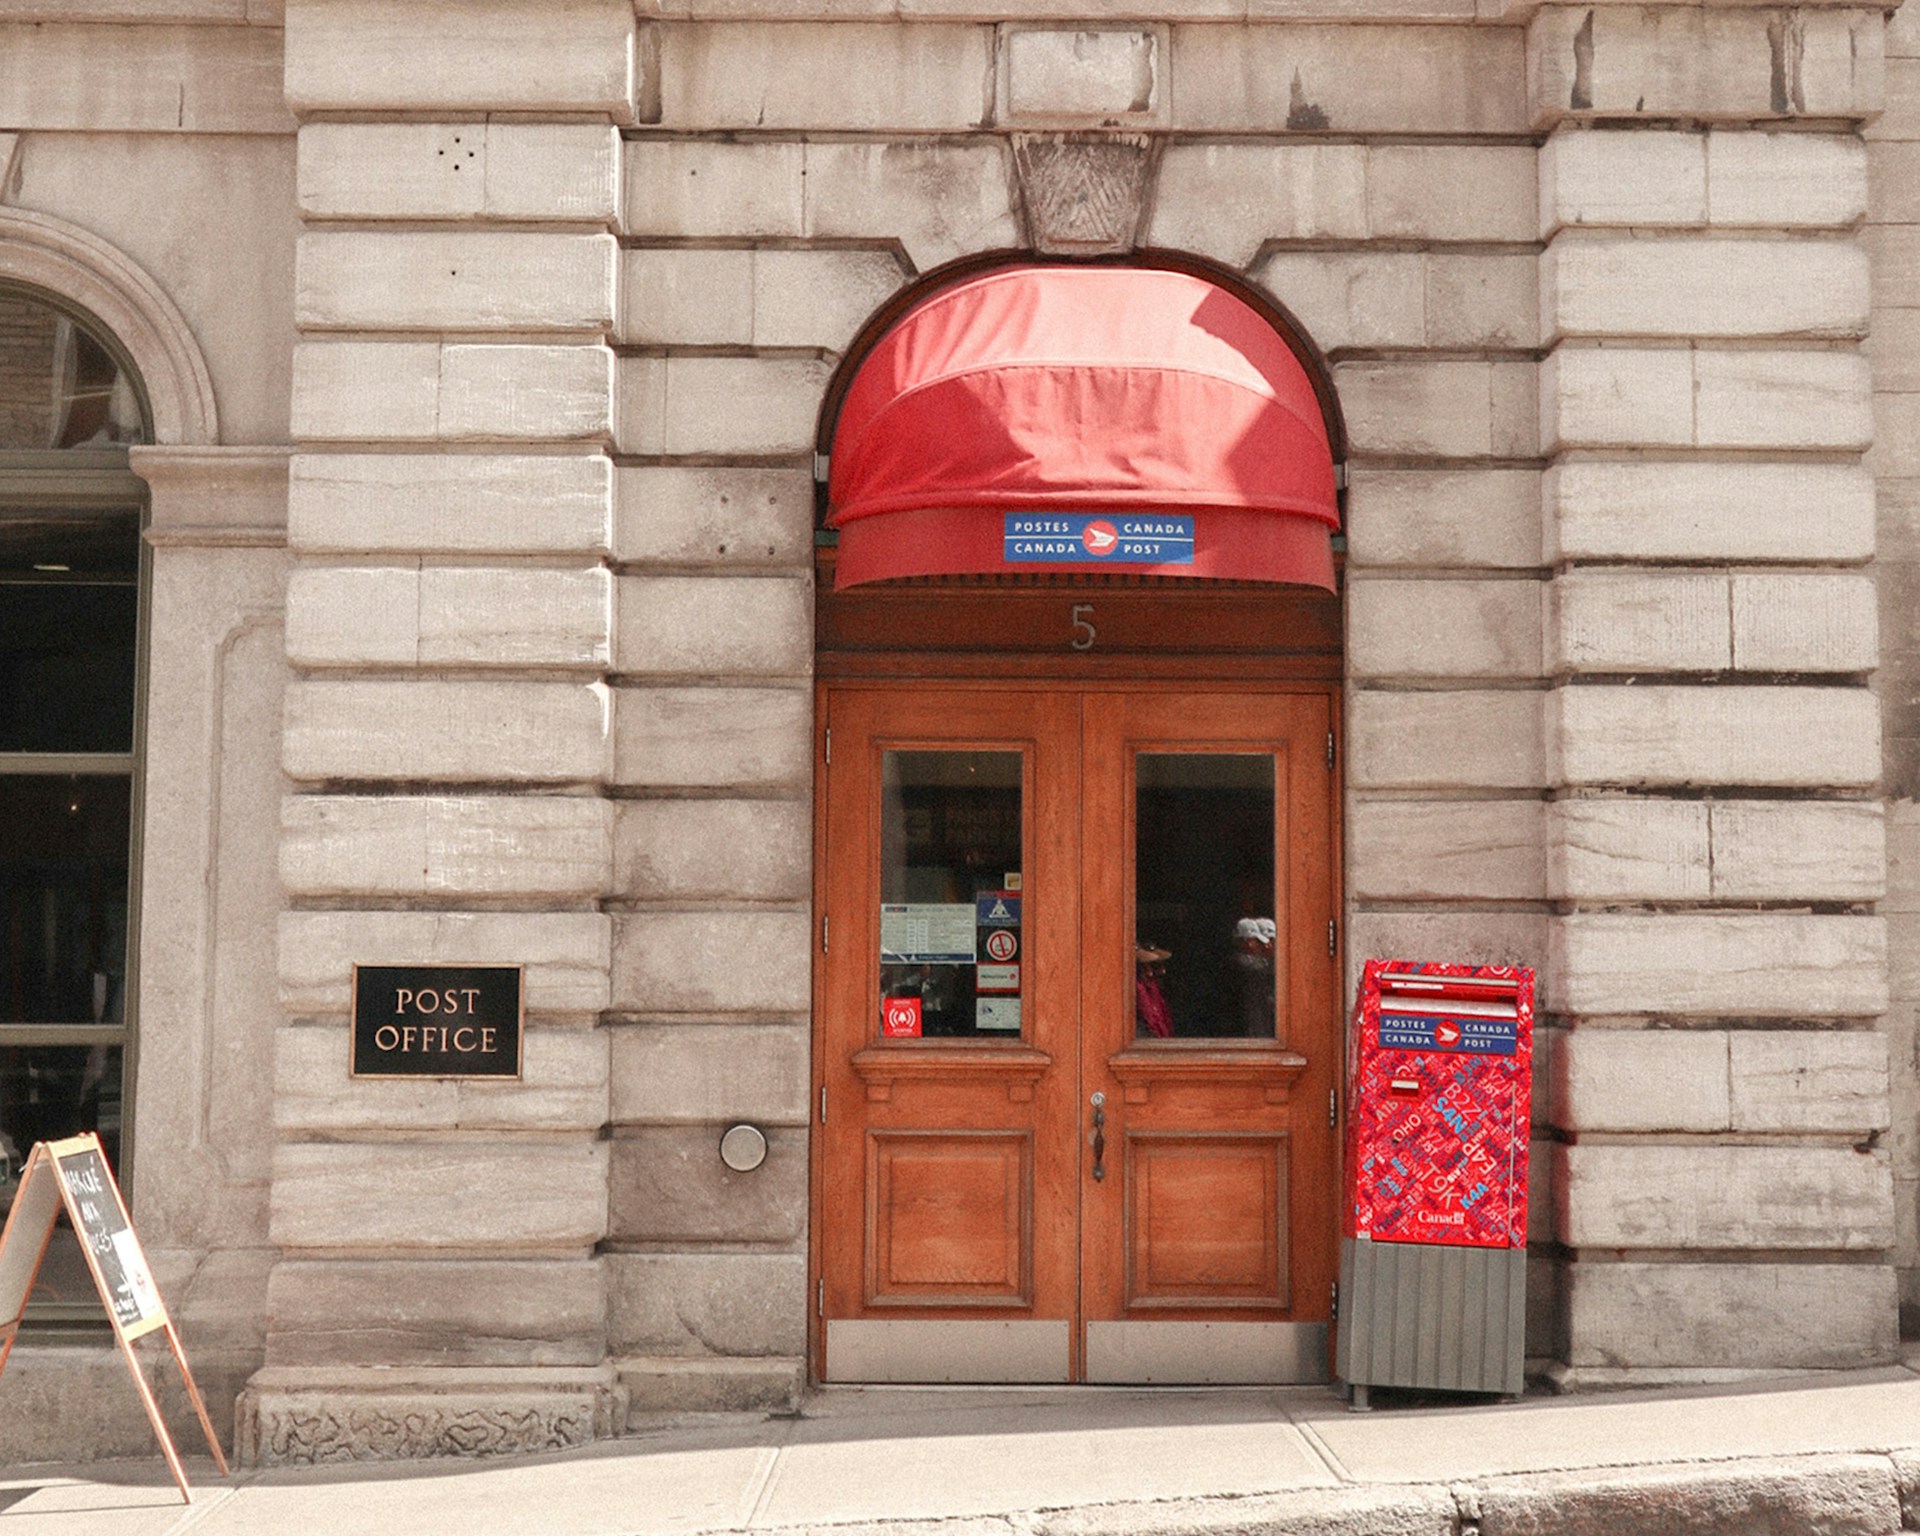 وزير بريطاني يلوح بإمكانية معاقبة الشركات المتورطة في فضيحة مكاتب البريد (آنسبلاش)